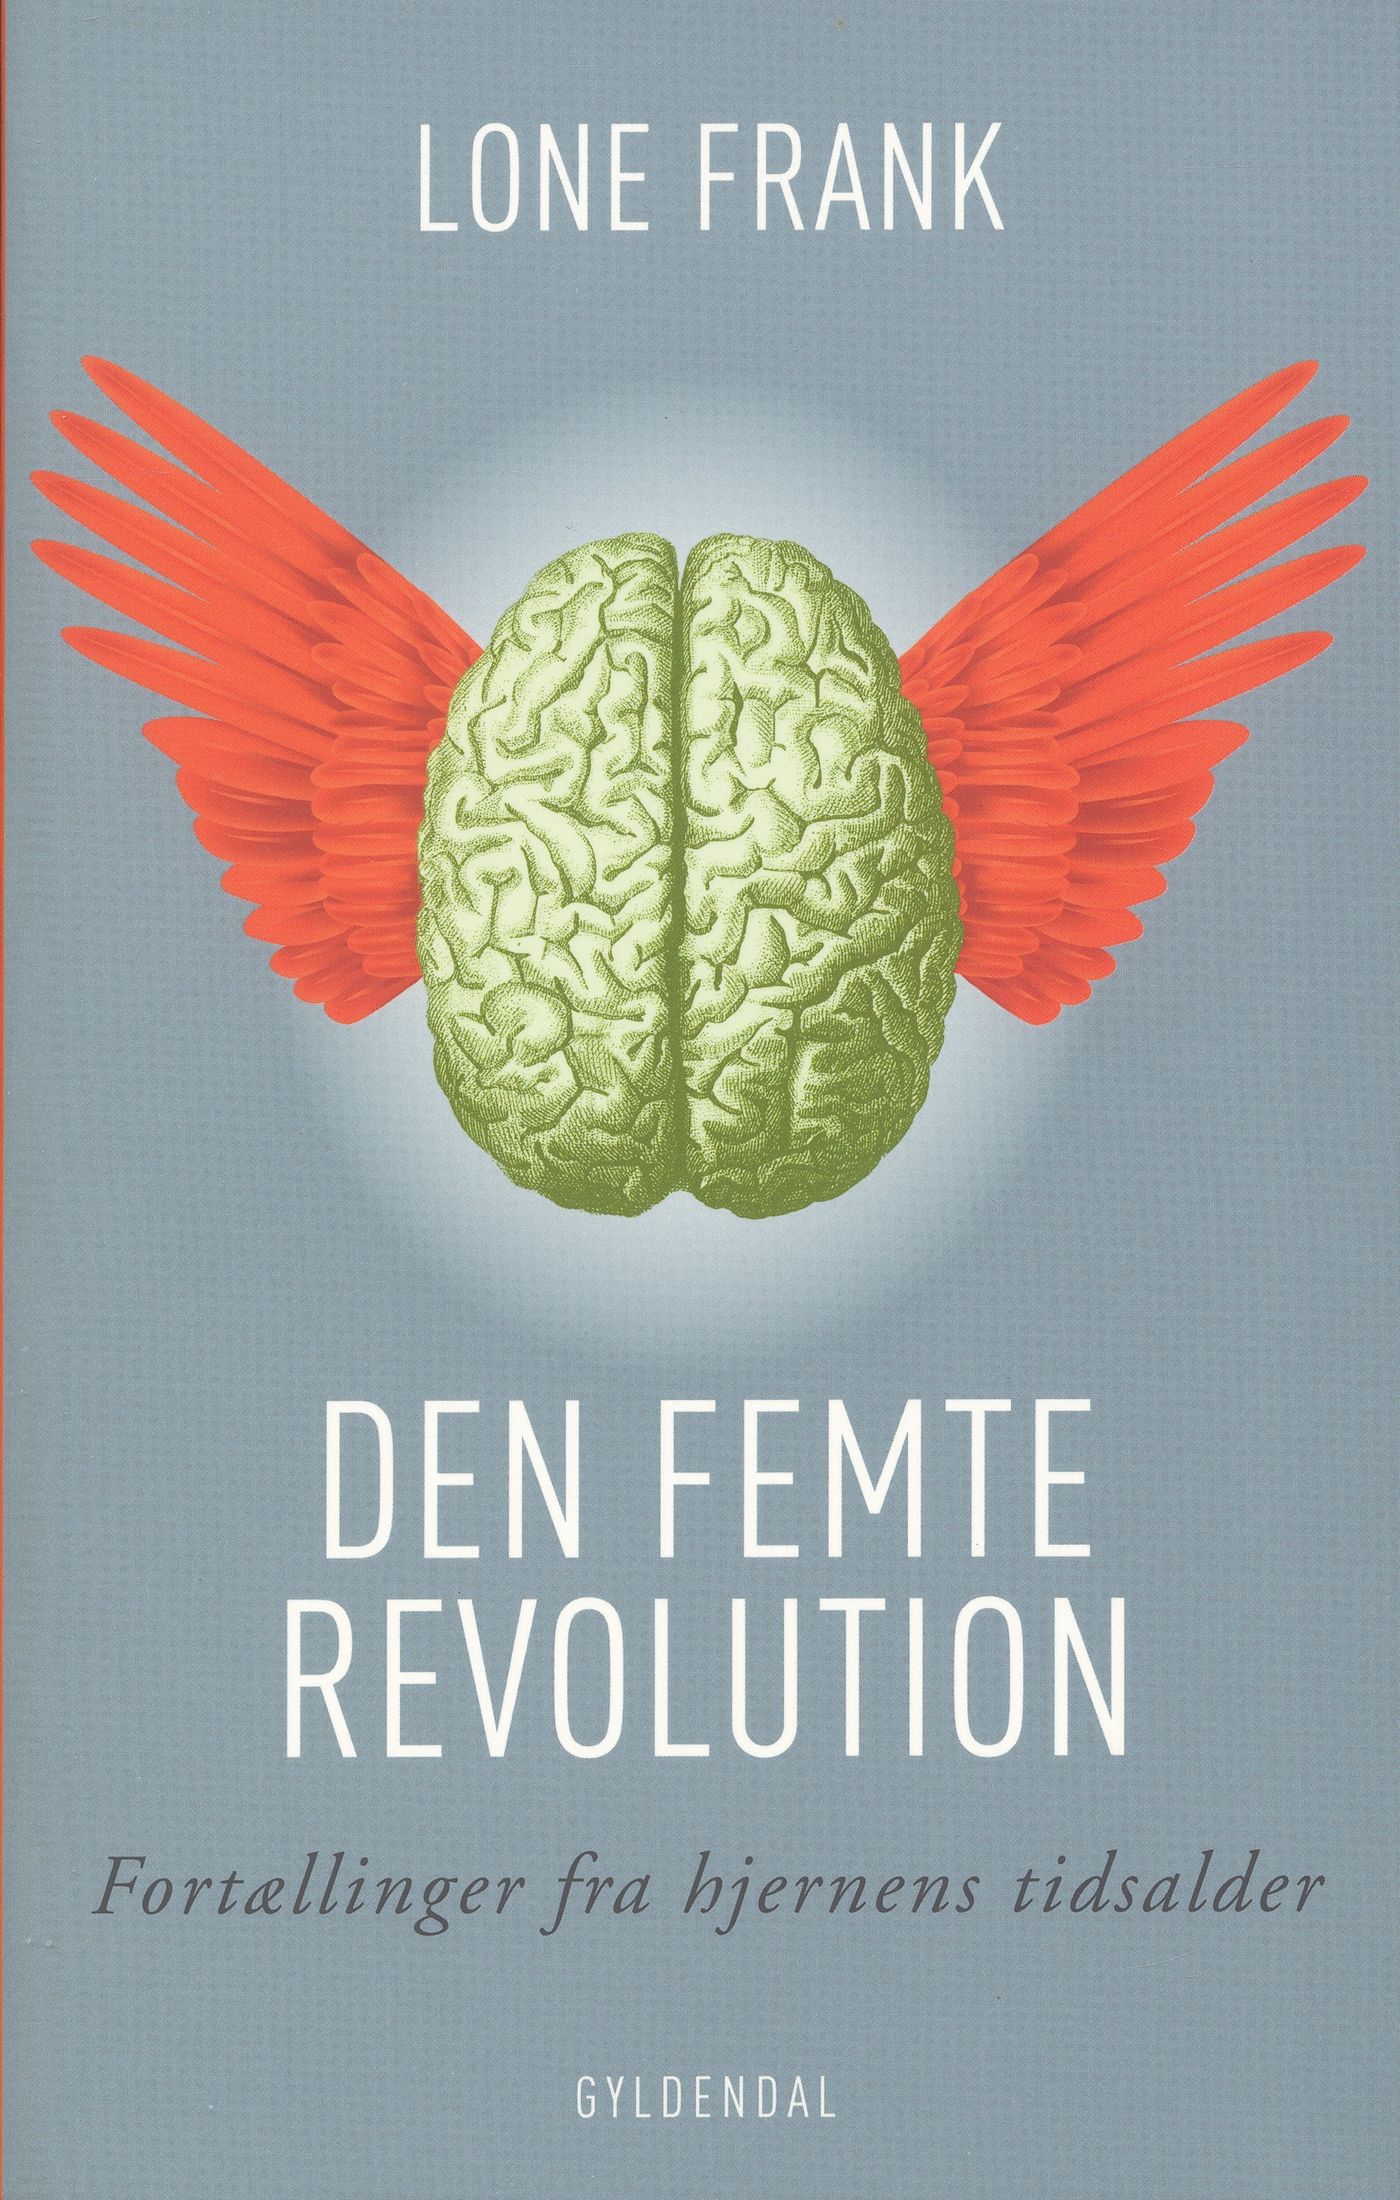 Den femte revolution, e-bog af Lone Frank